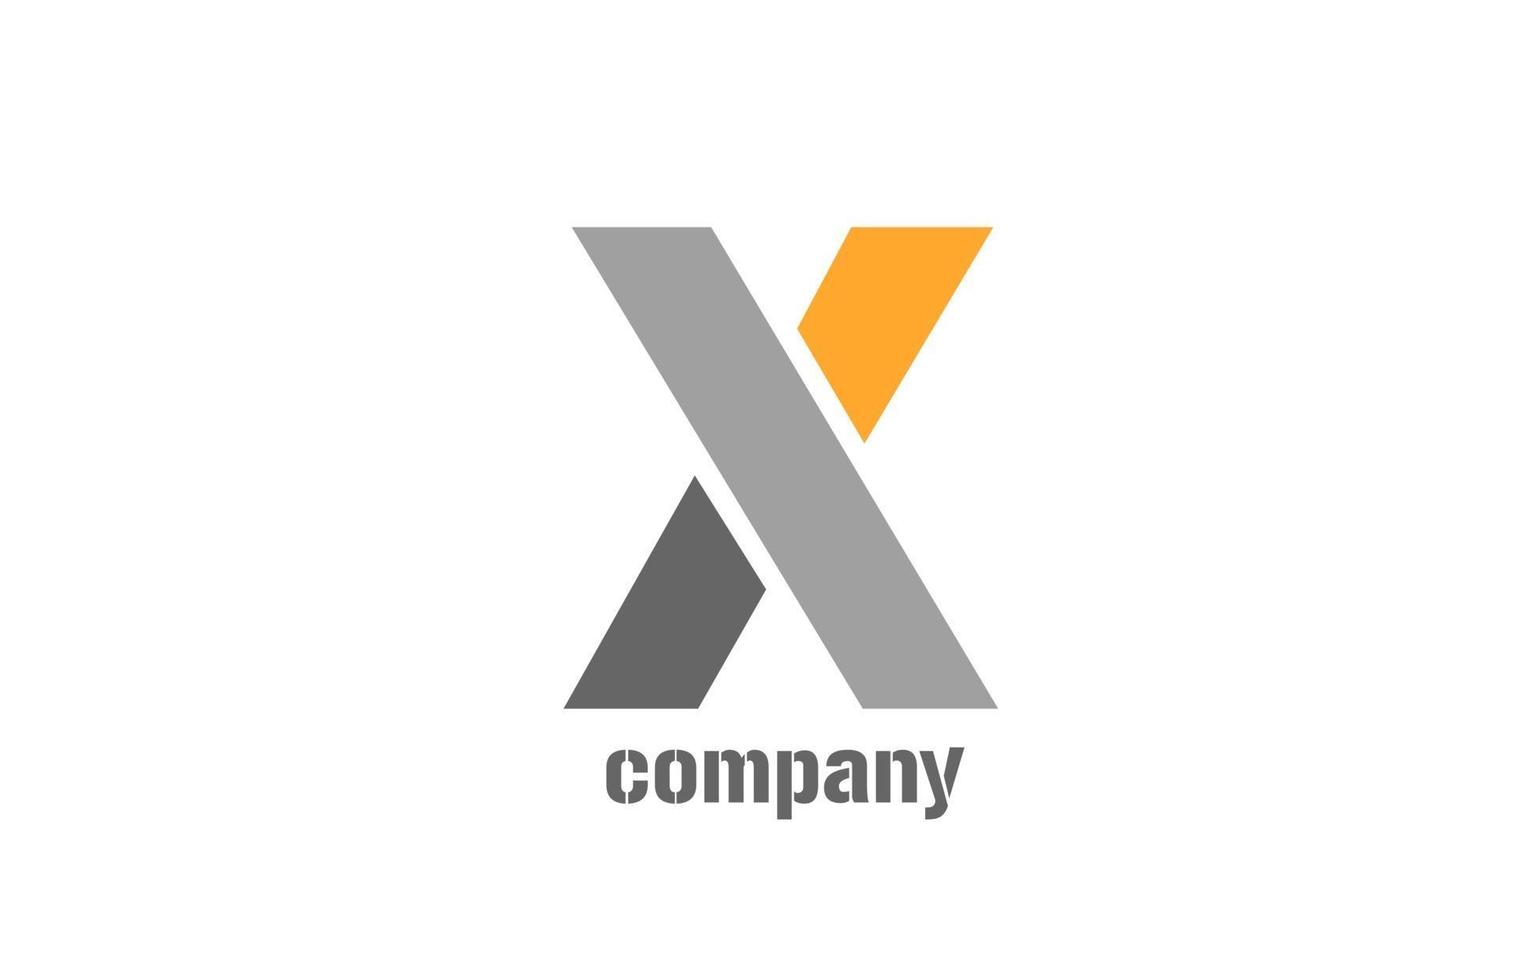 gelbes und graues x Alphabet-Logo-Design-Symbol für Unternehmen vektor